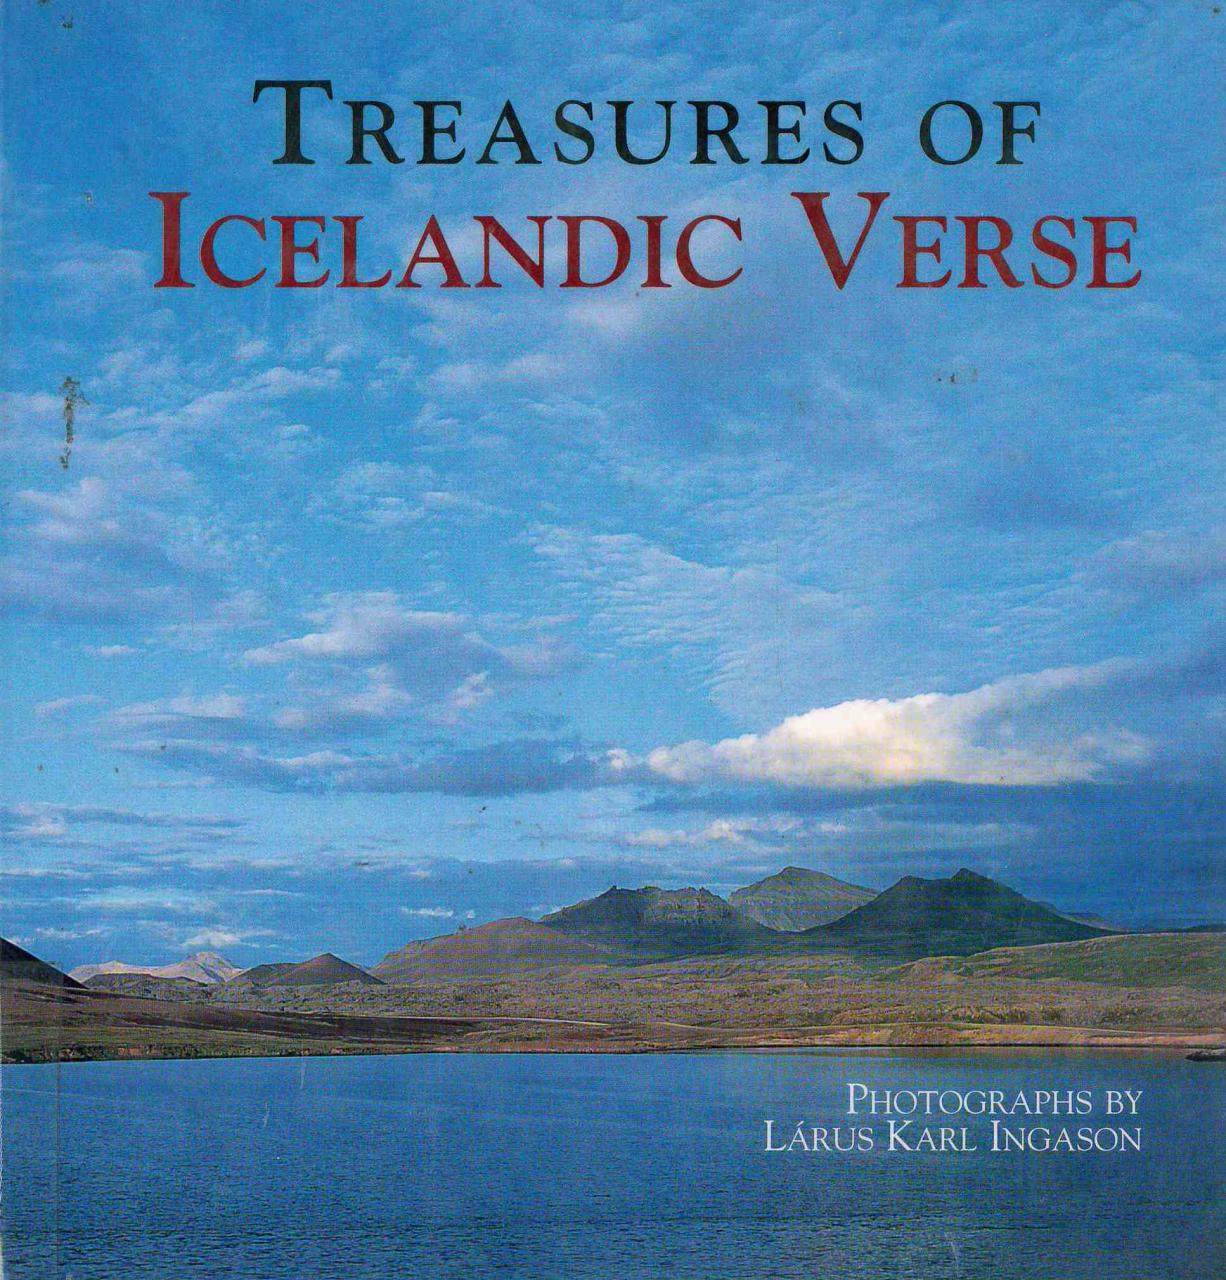 Ljóð í Treasures of Icelandic Verse